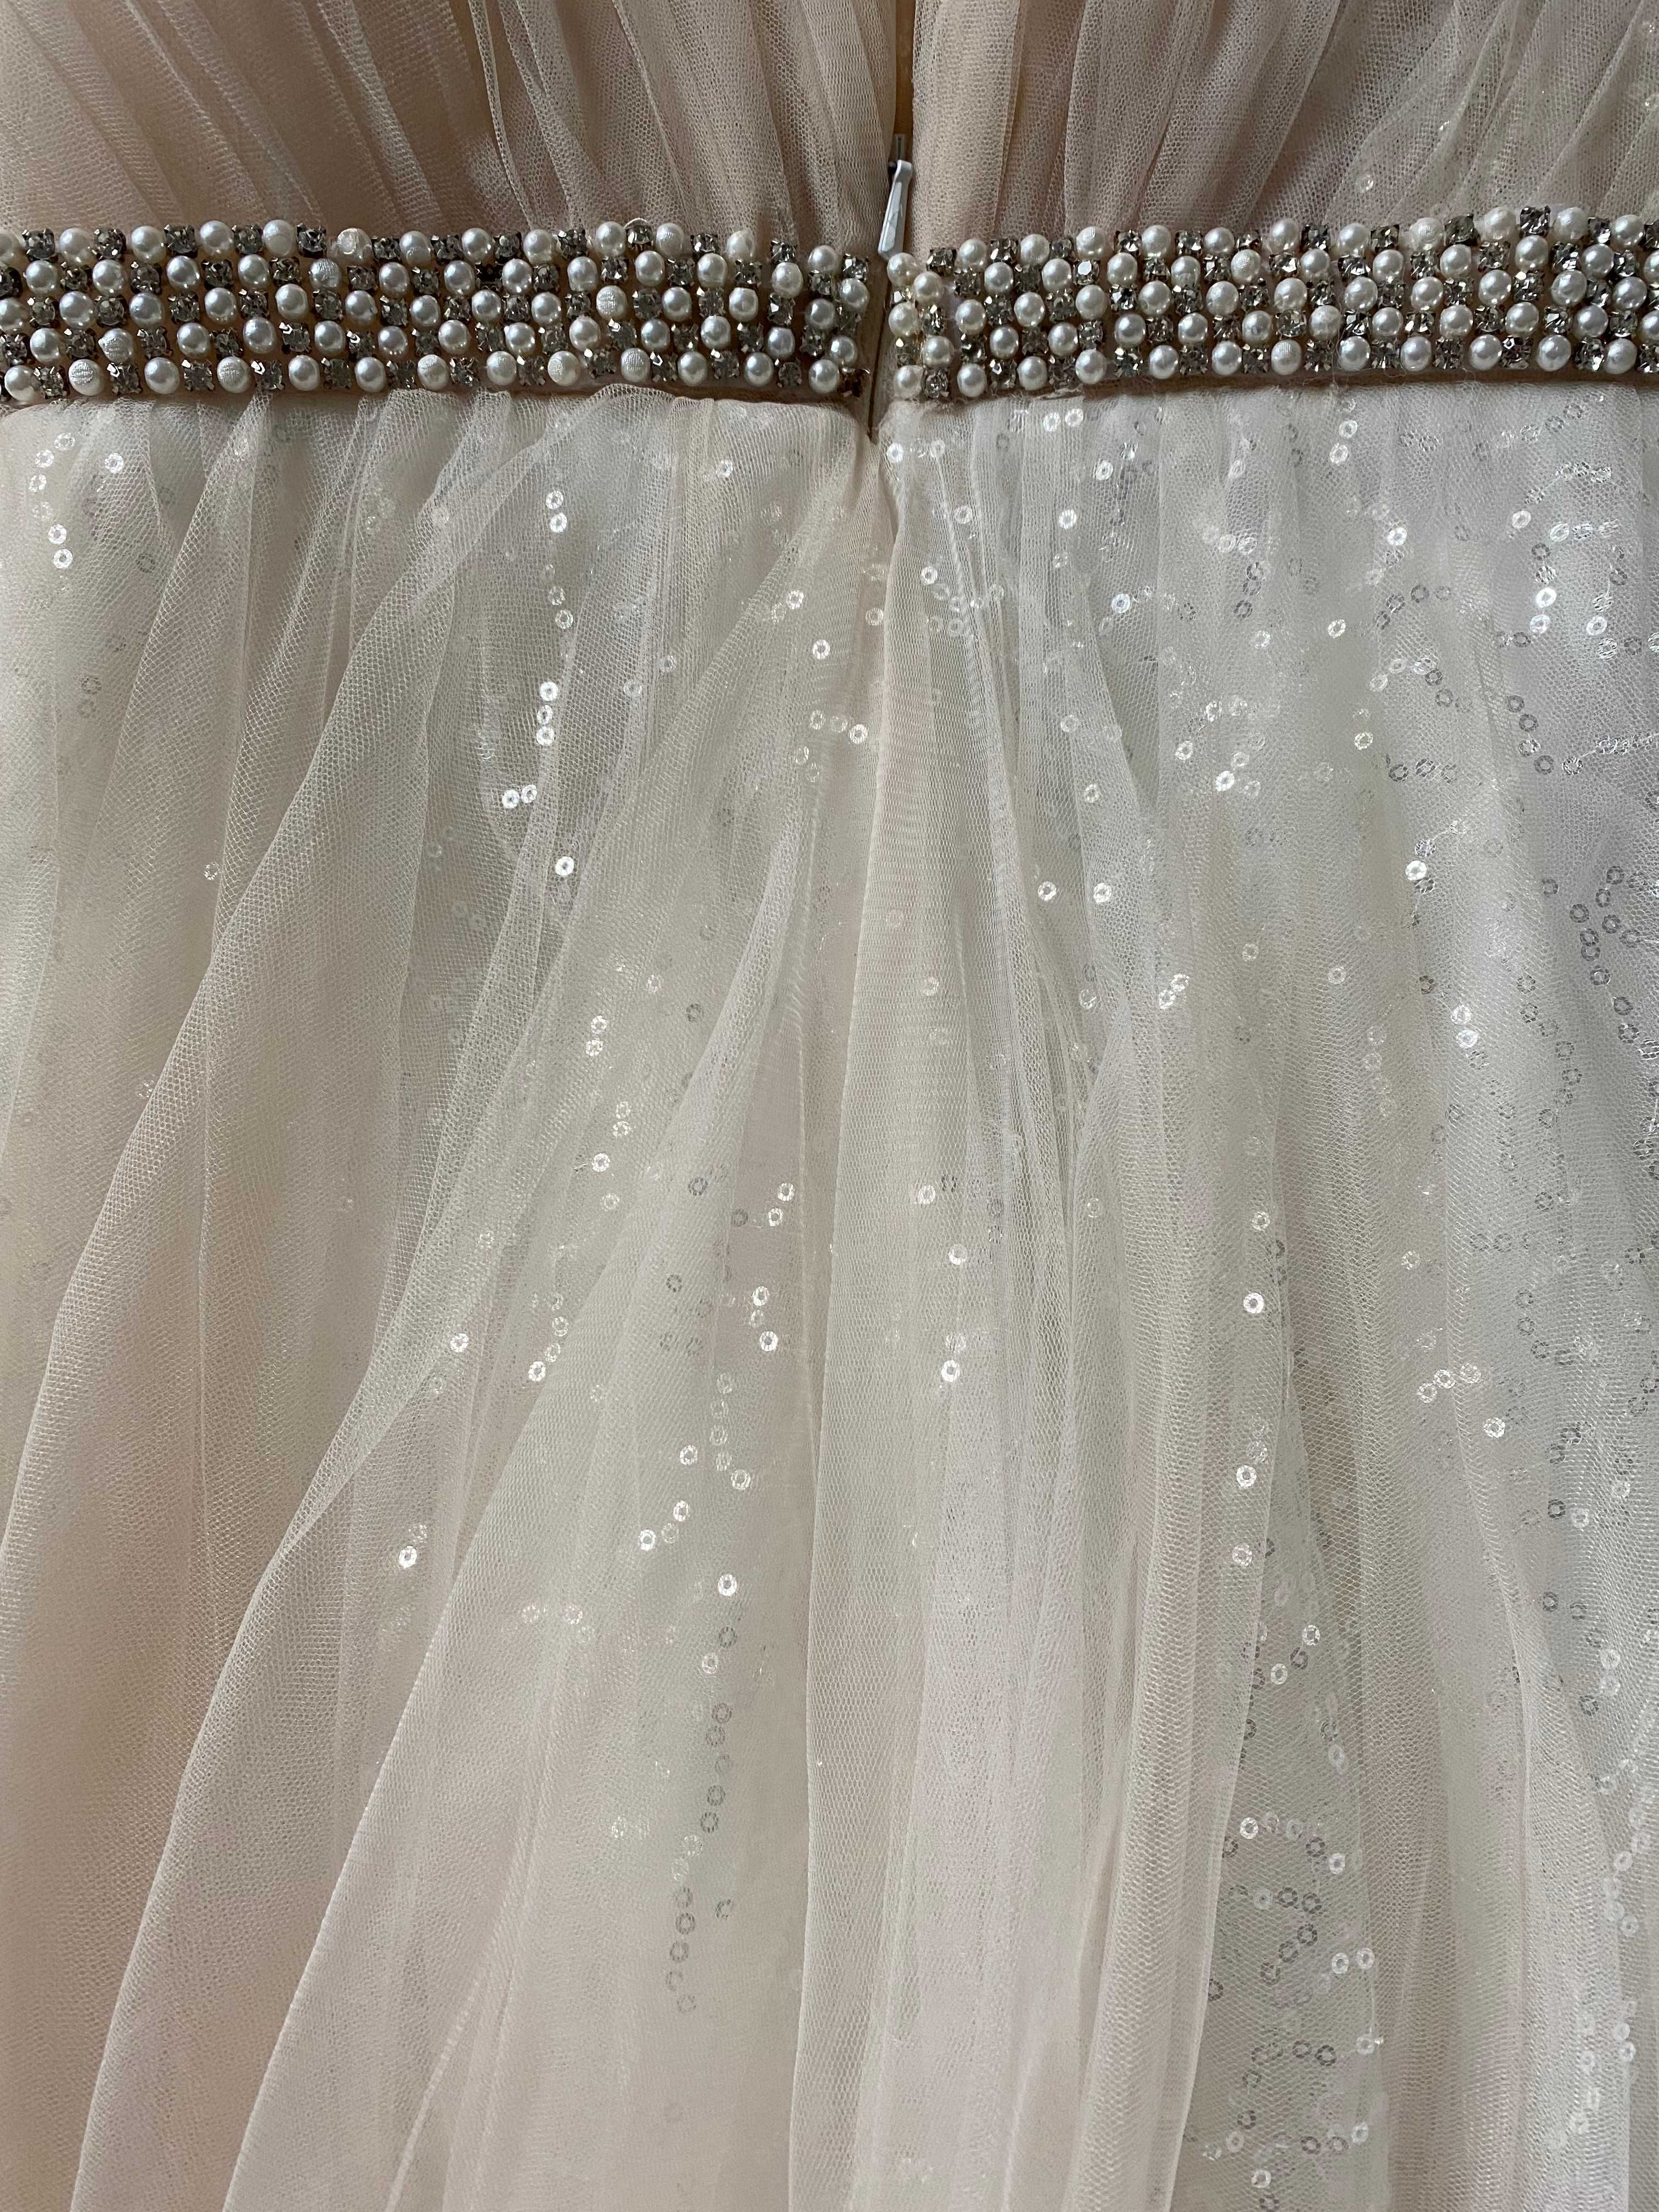 Suknia ślubna autorski projekt oryginalna biały jasny beż nude błysk